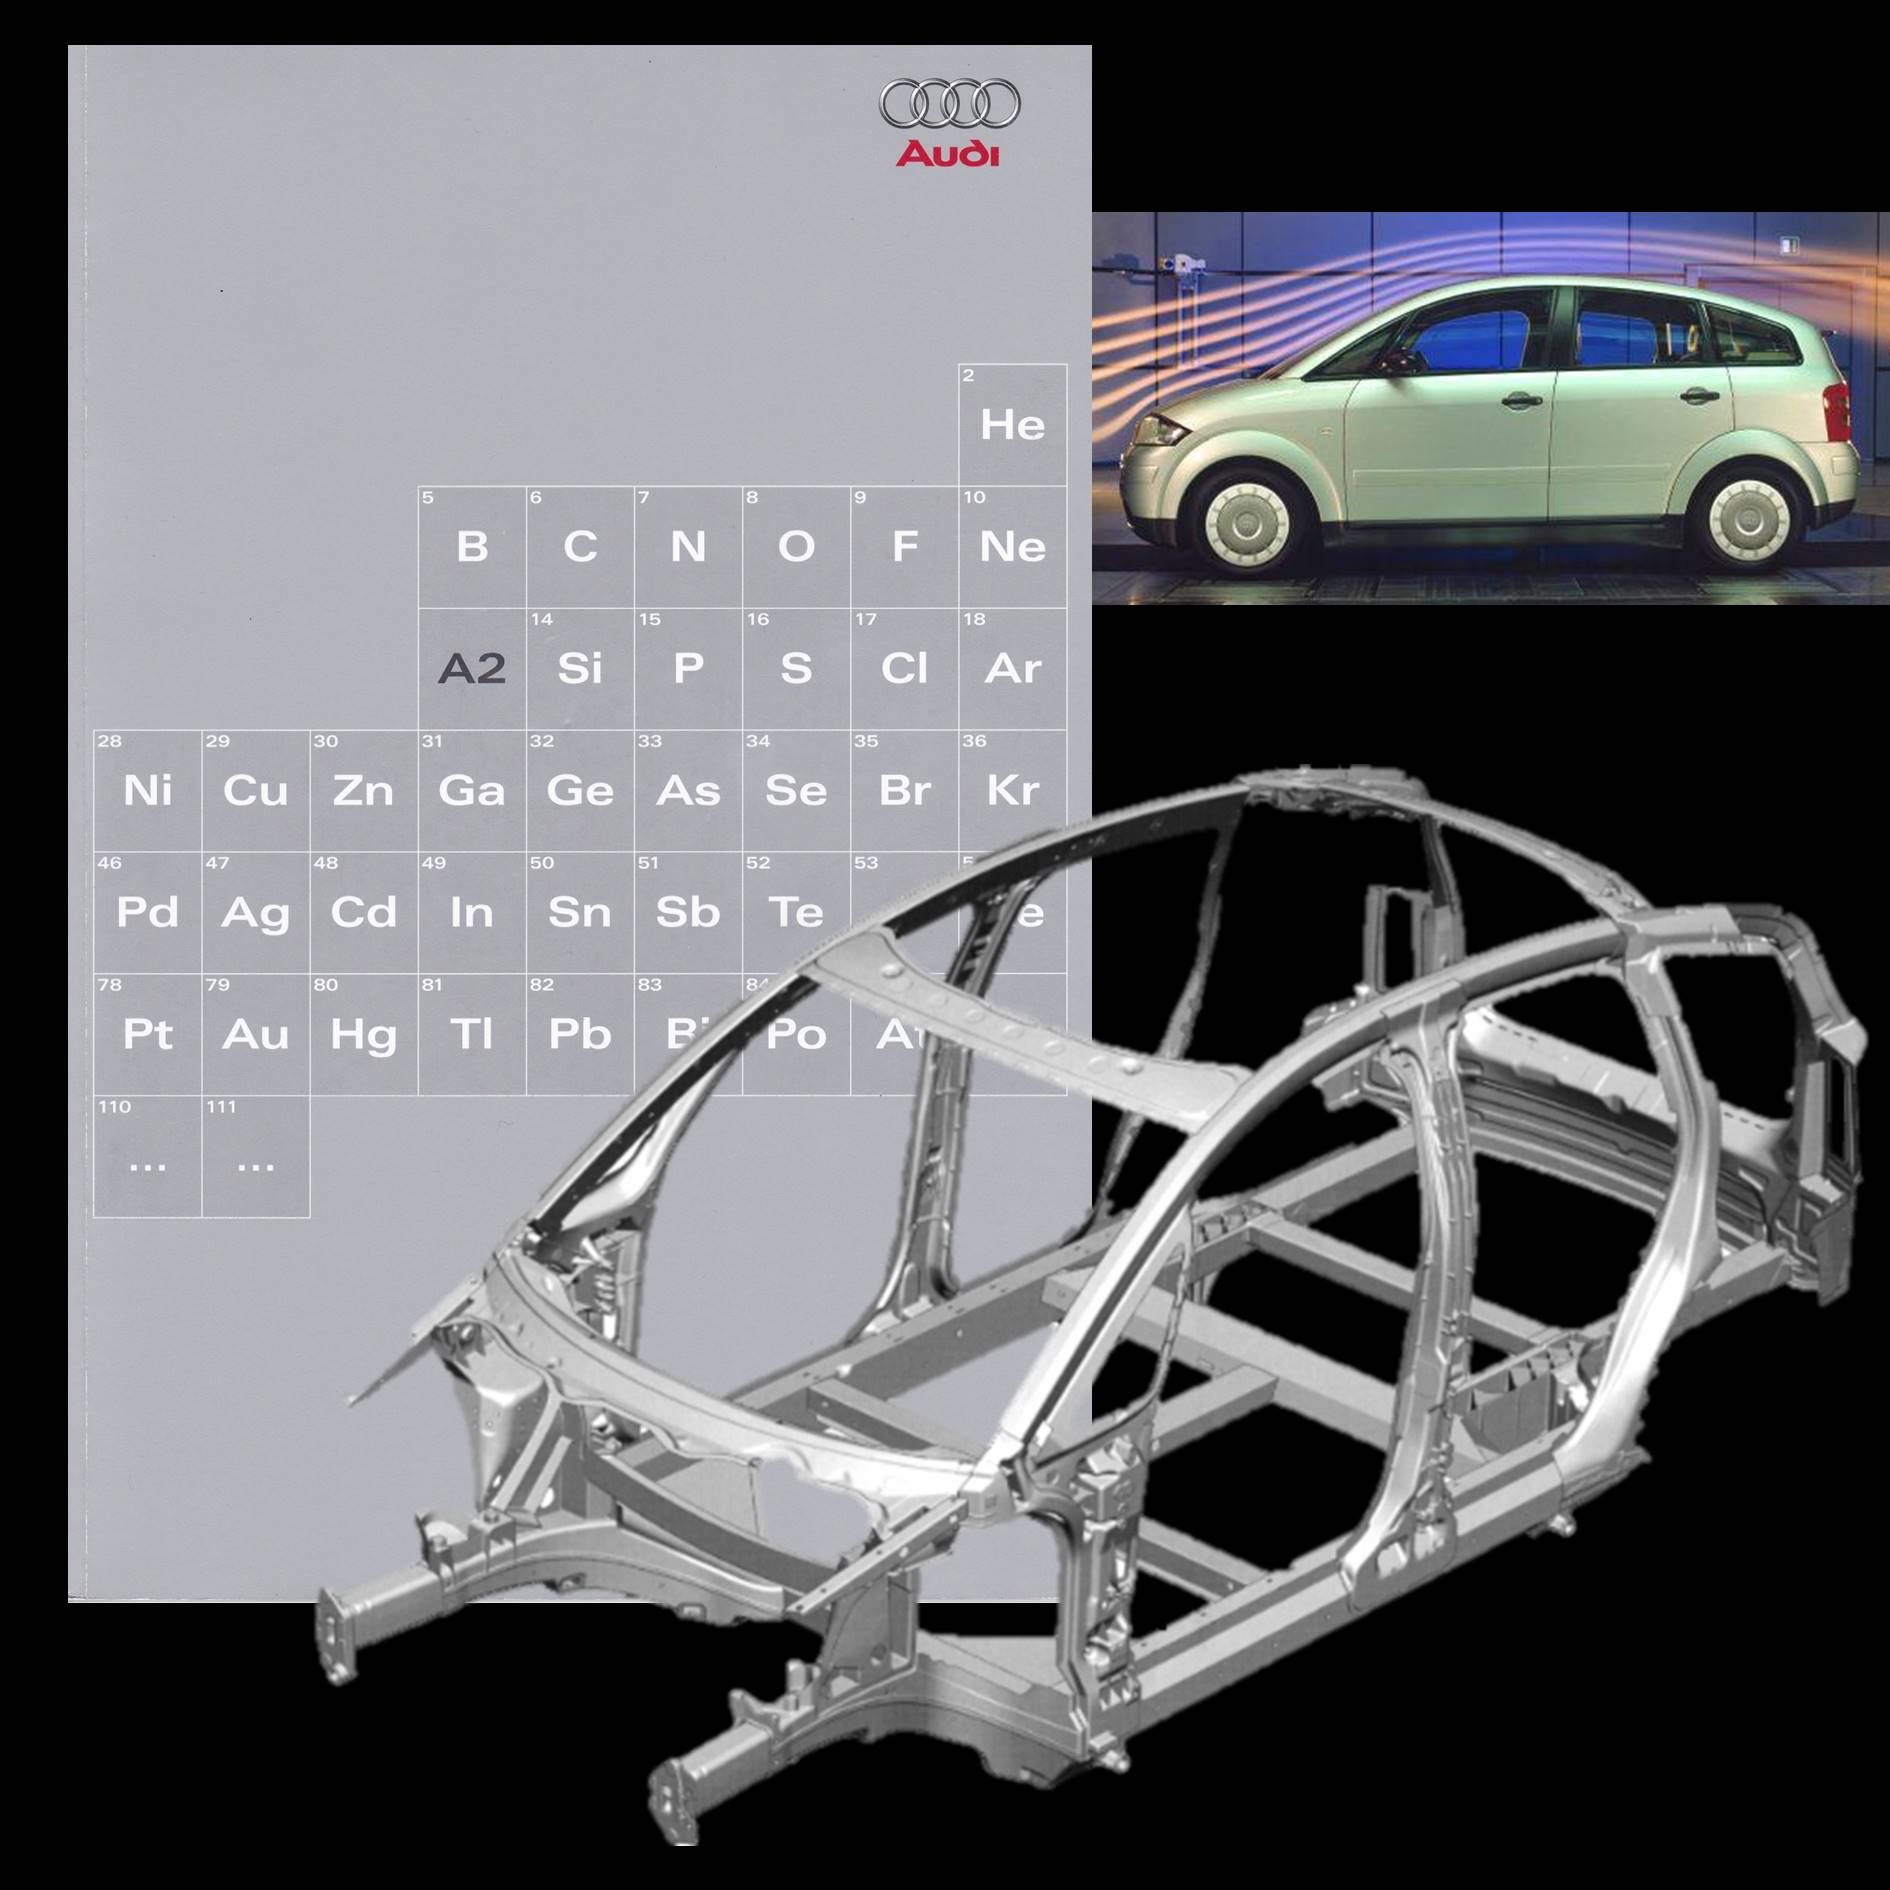 Aluminium frame voor een auto, zilverkleurige brochure en een auto van de zijkant gezien met grafische weergave van luchtstromen